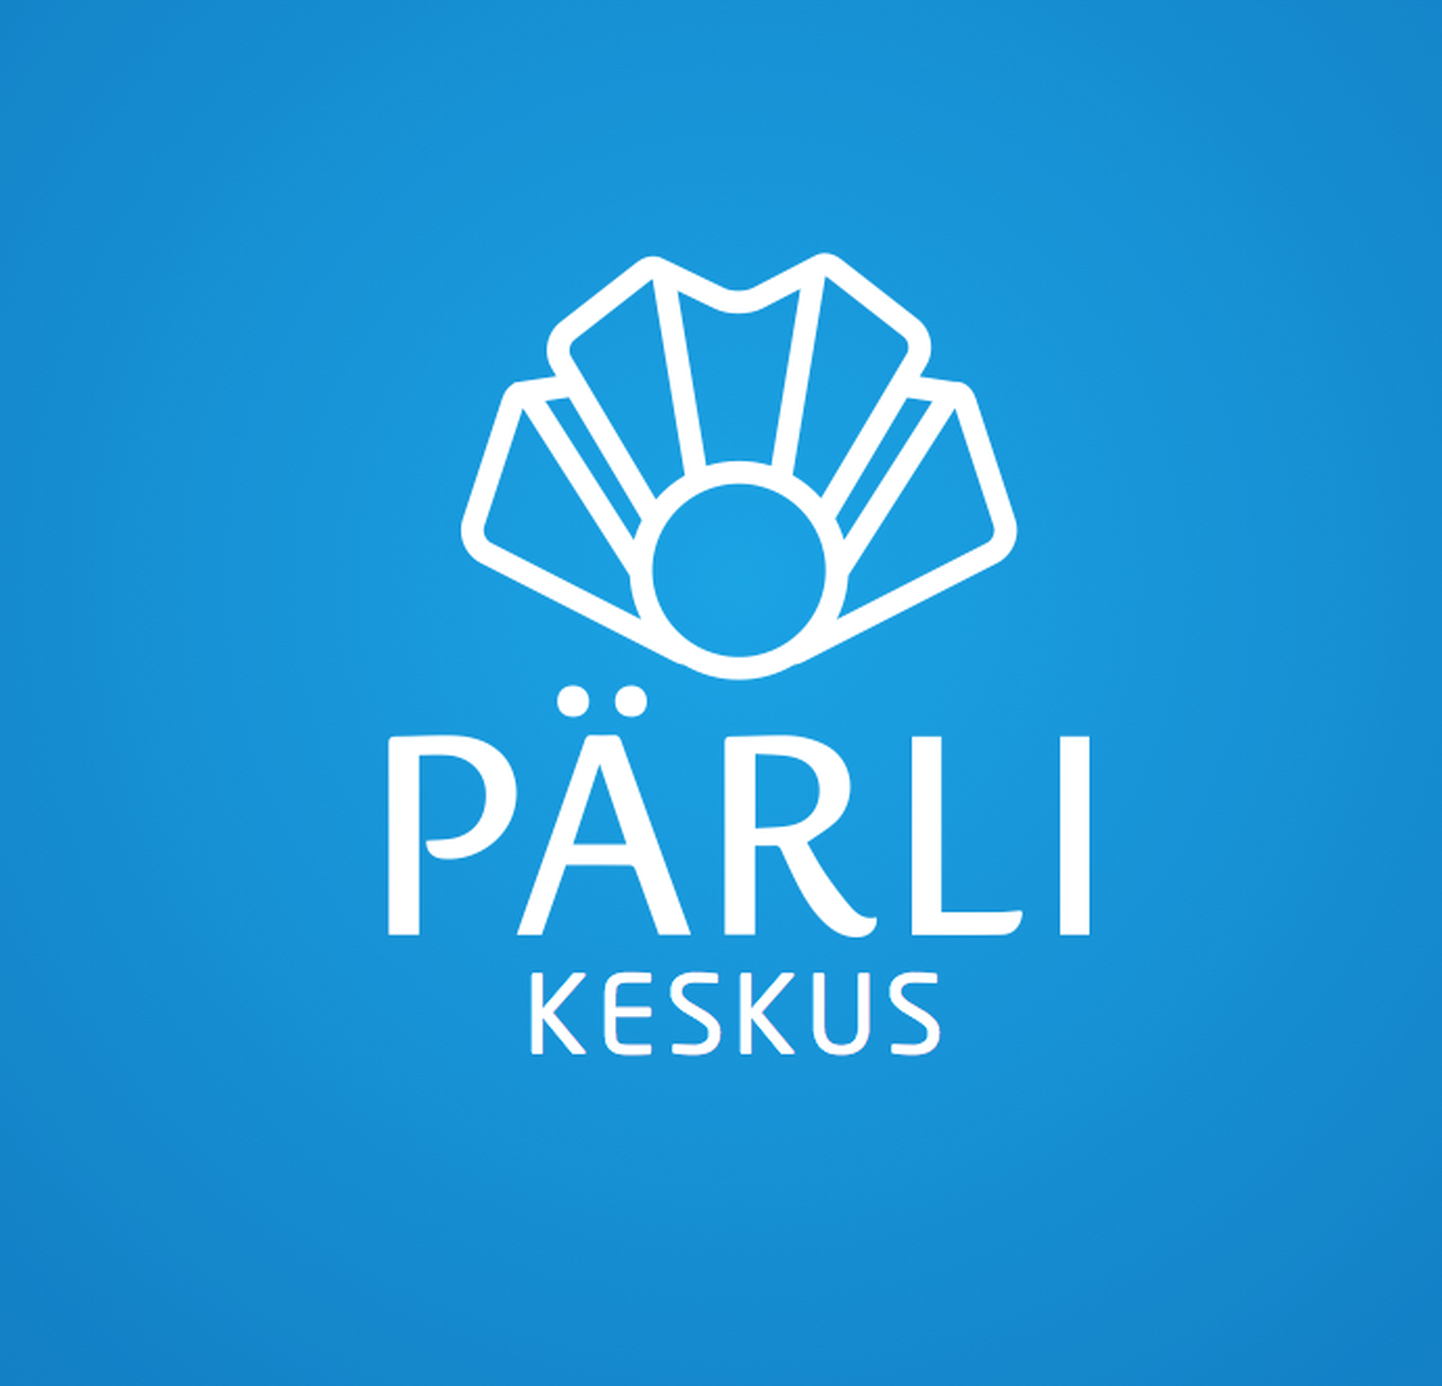 Торгово-развлекательный центр Pärli Keskus.